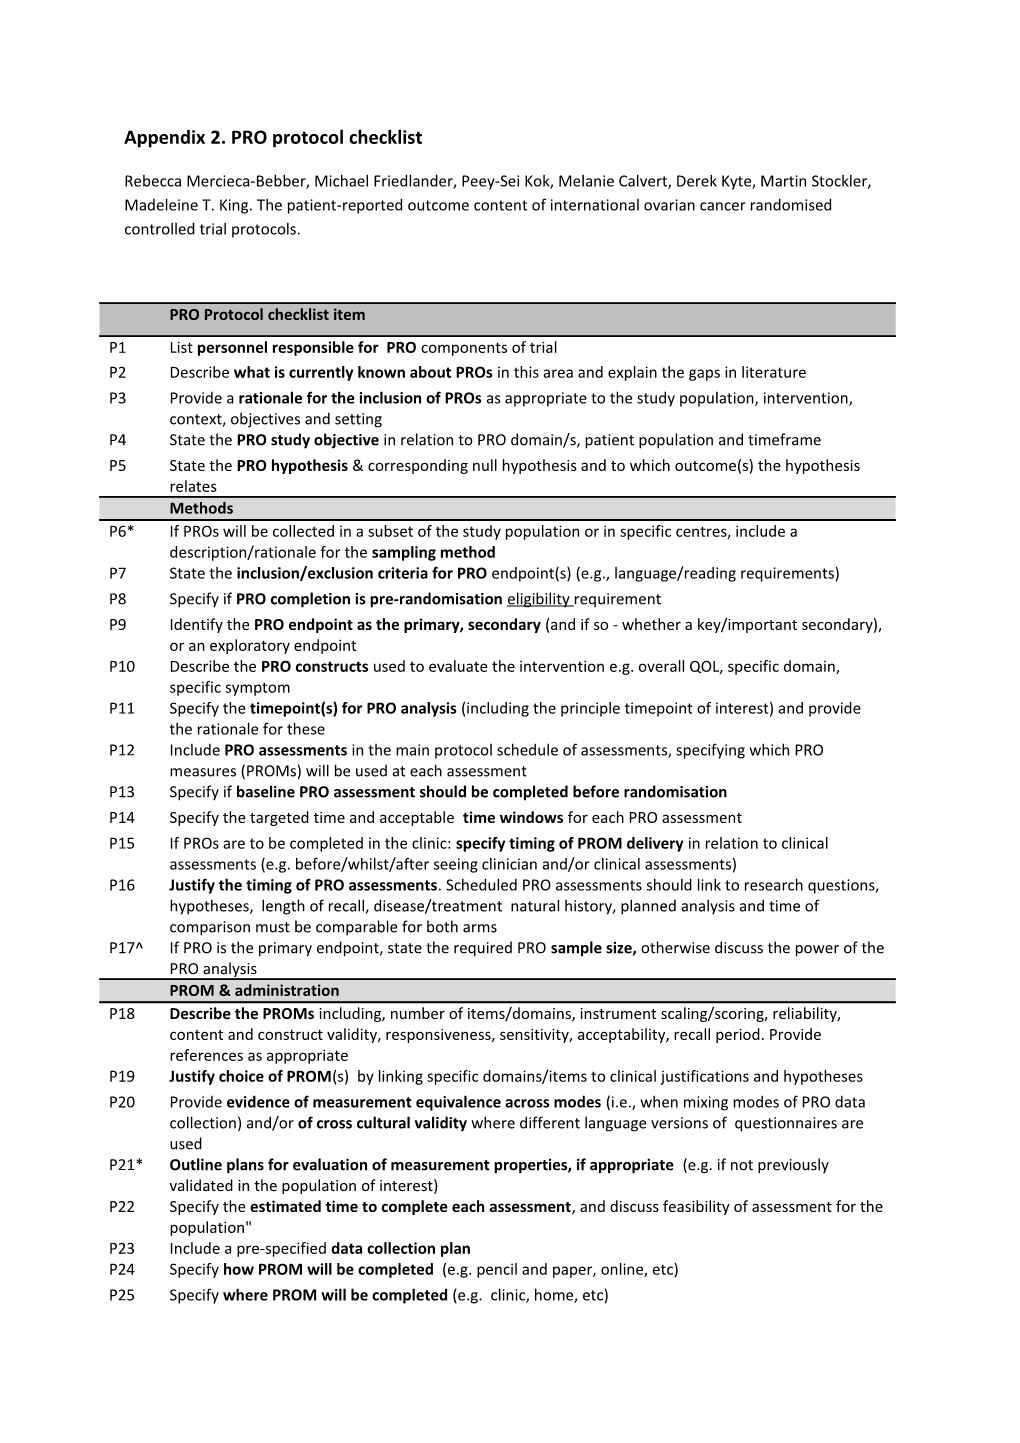 Appendix 2. PRO Protocol Checklist